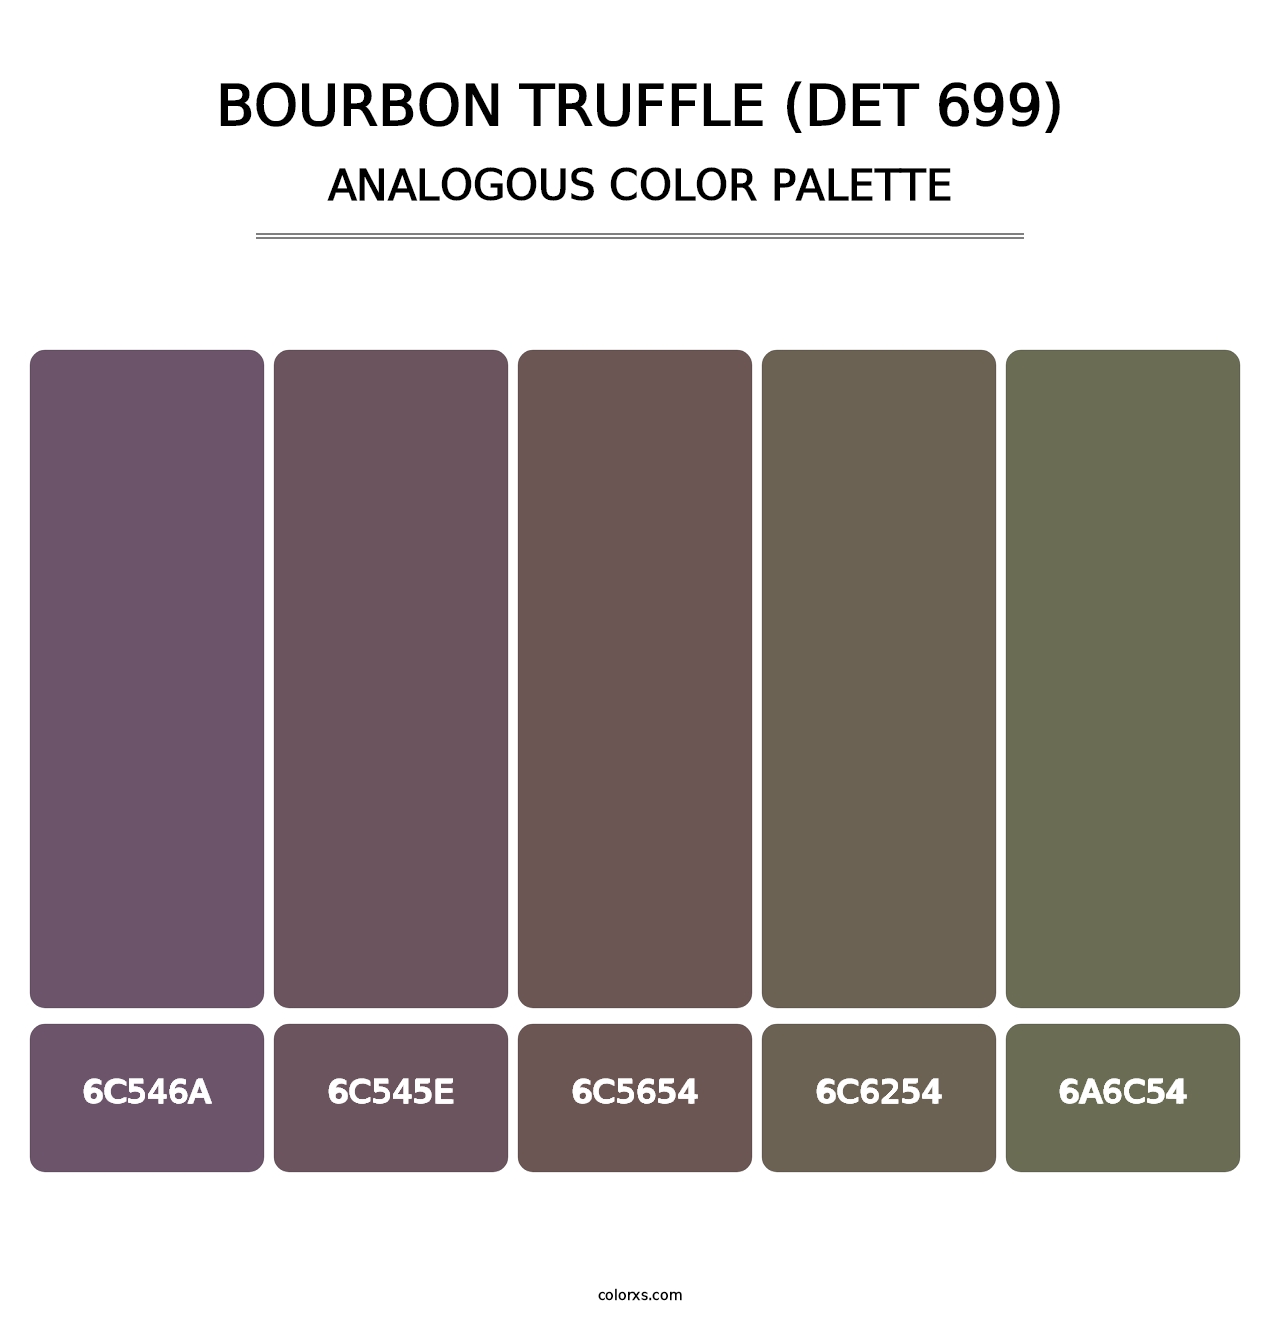 Bourbon Truffle (DET 699) - Analogous Color Palette